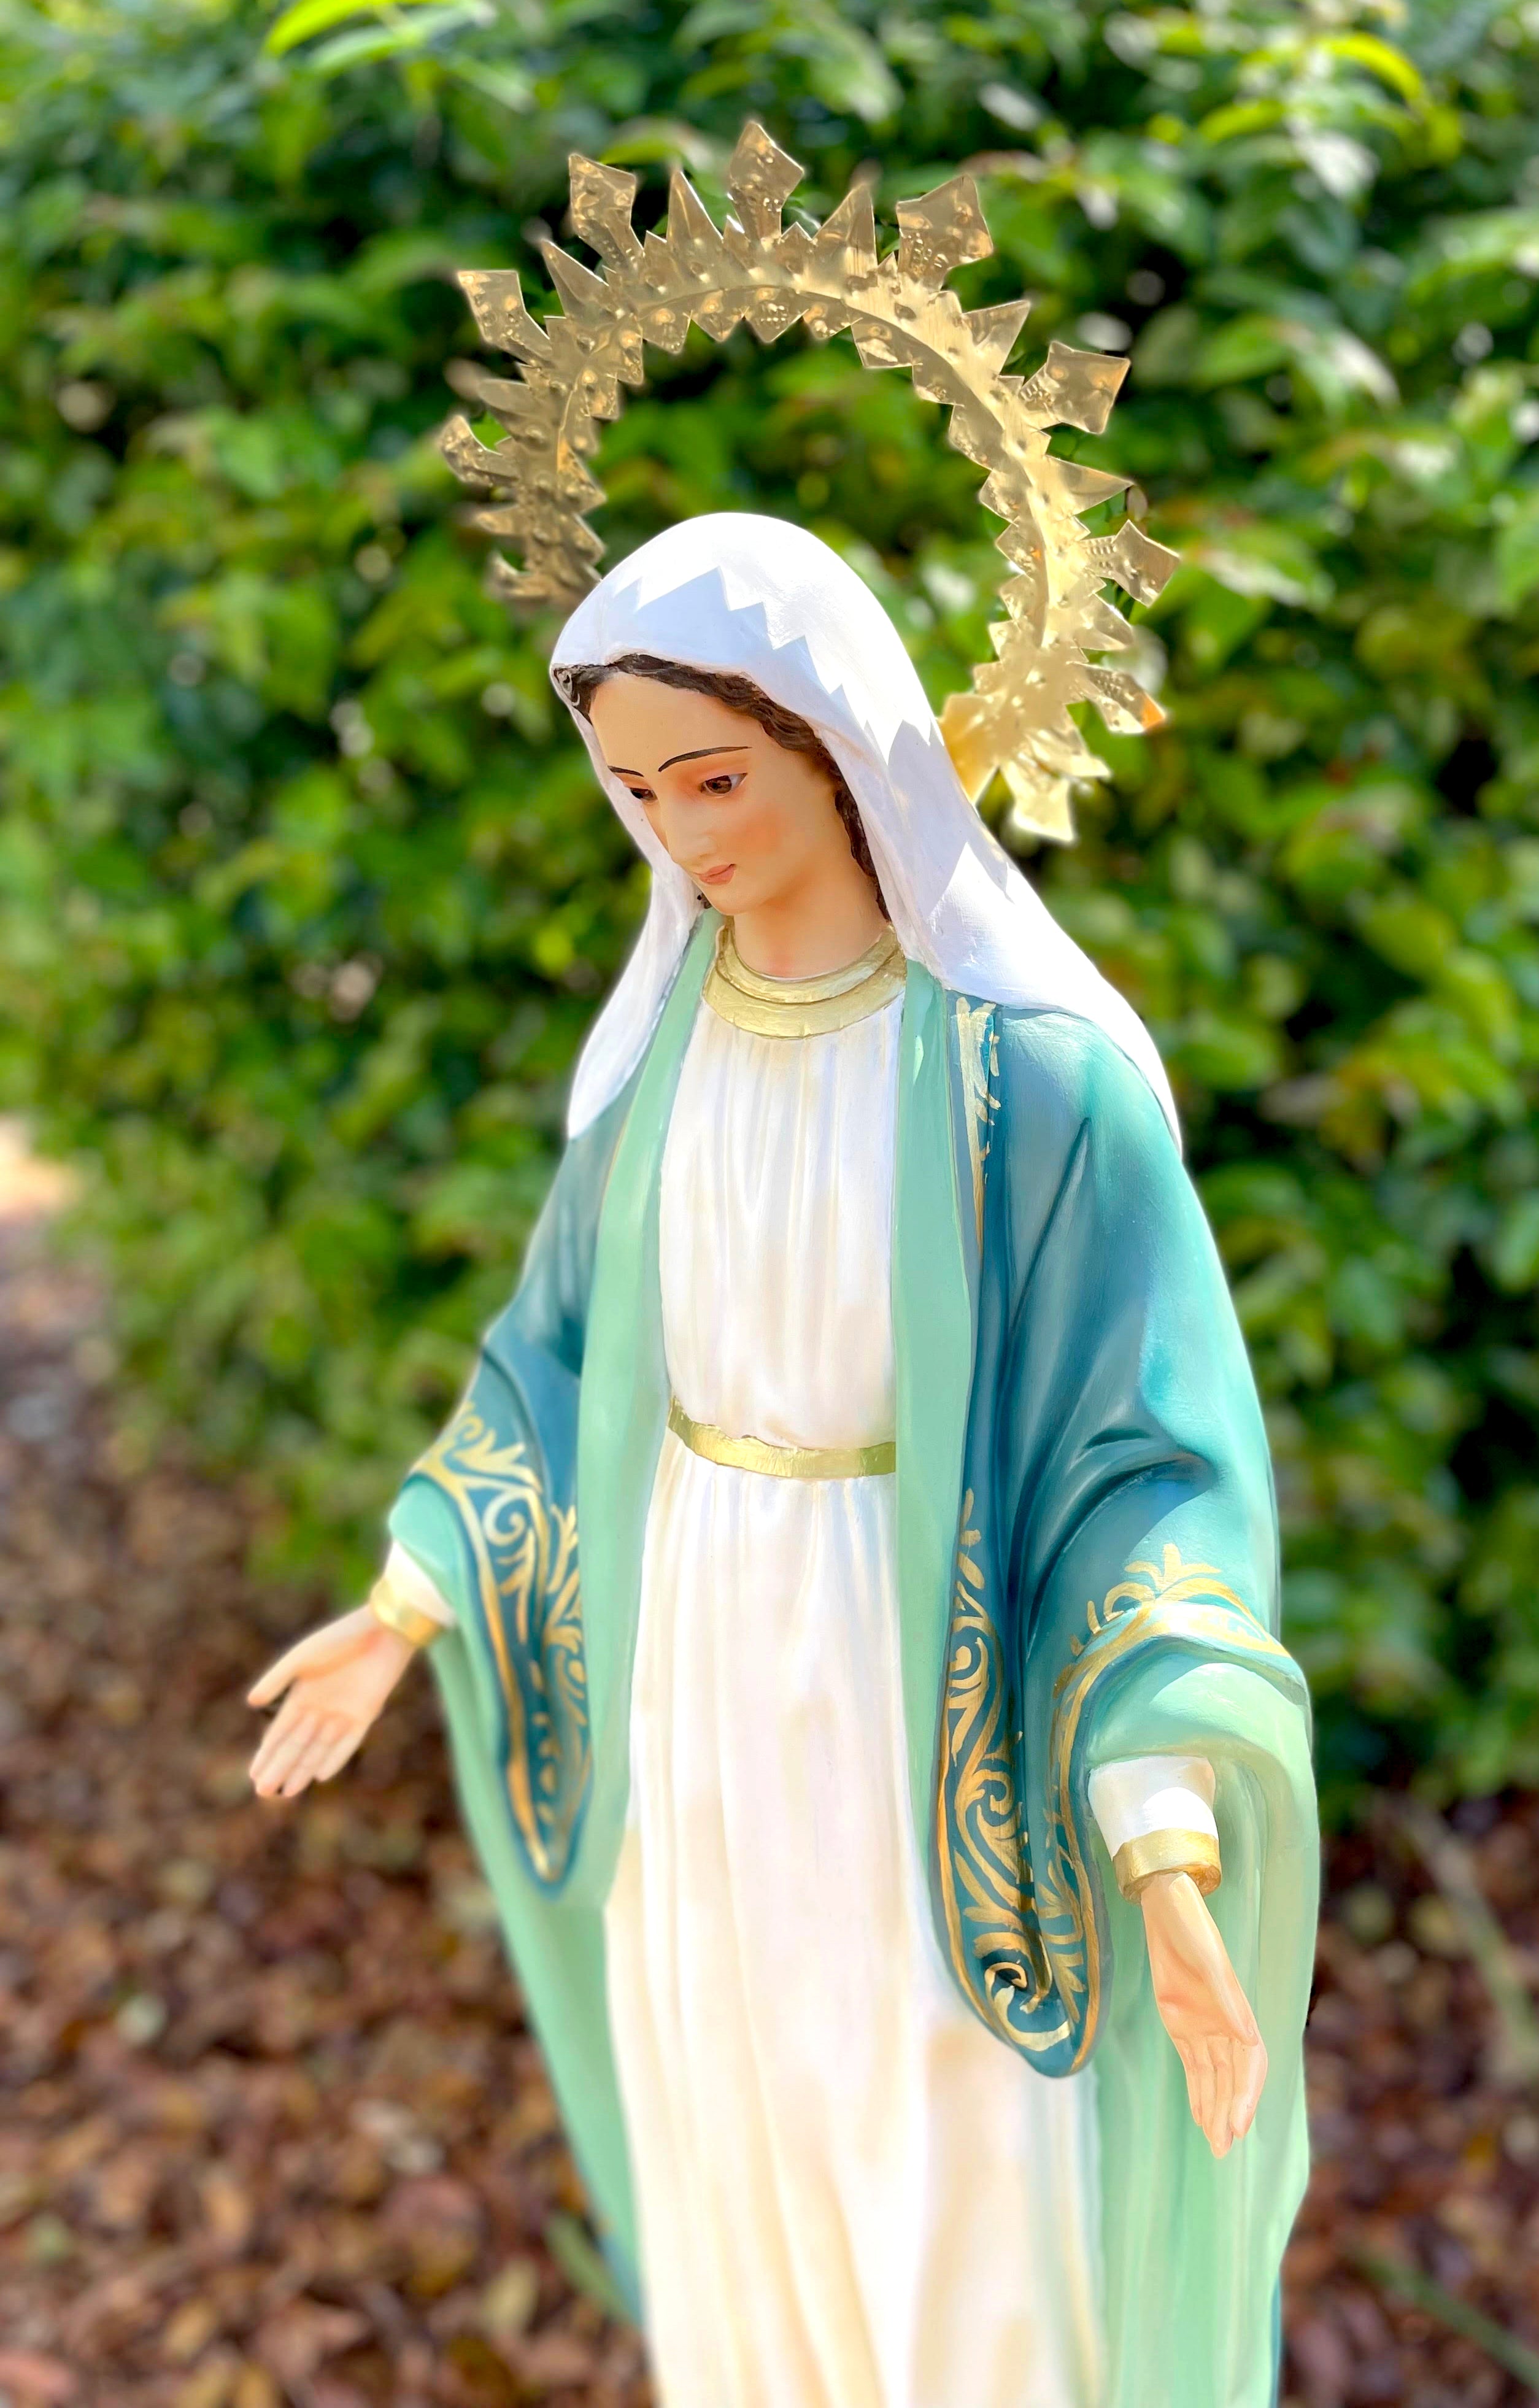 39" Our Lady of Grace Indoor and Outdoor Statue / Imagen de la Virgen Milagrosa de 39" para Interiores y Extreriores